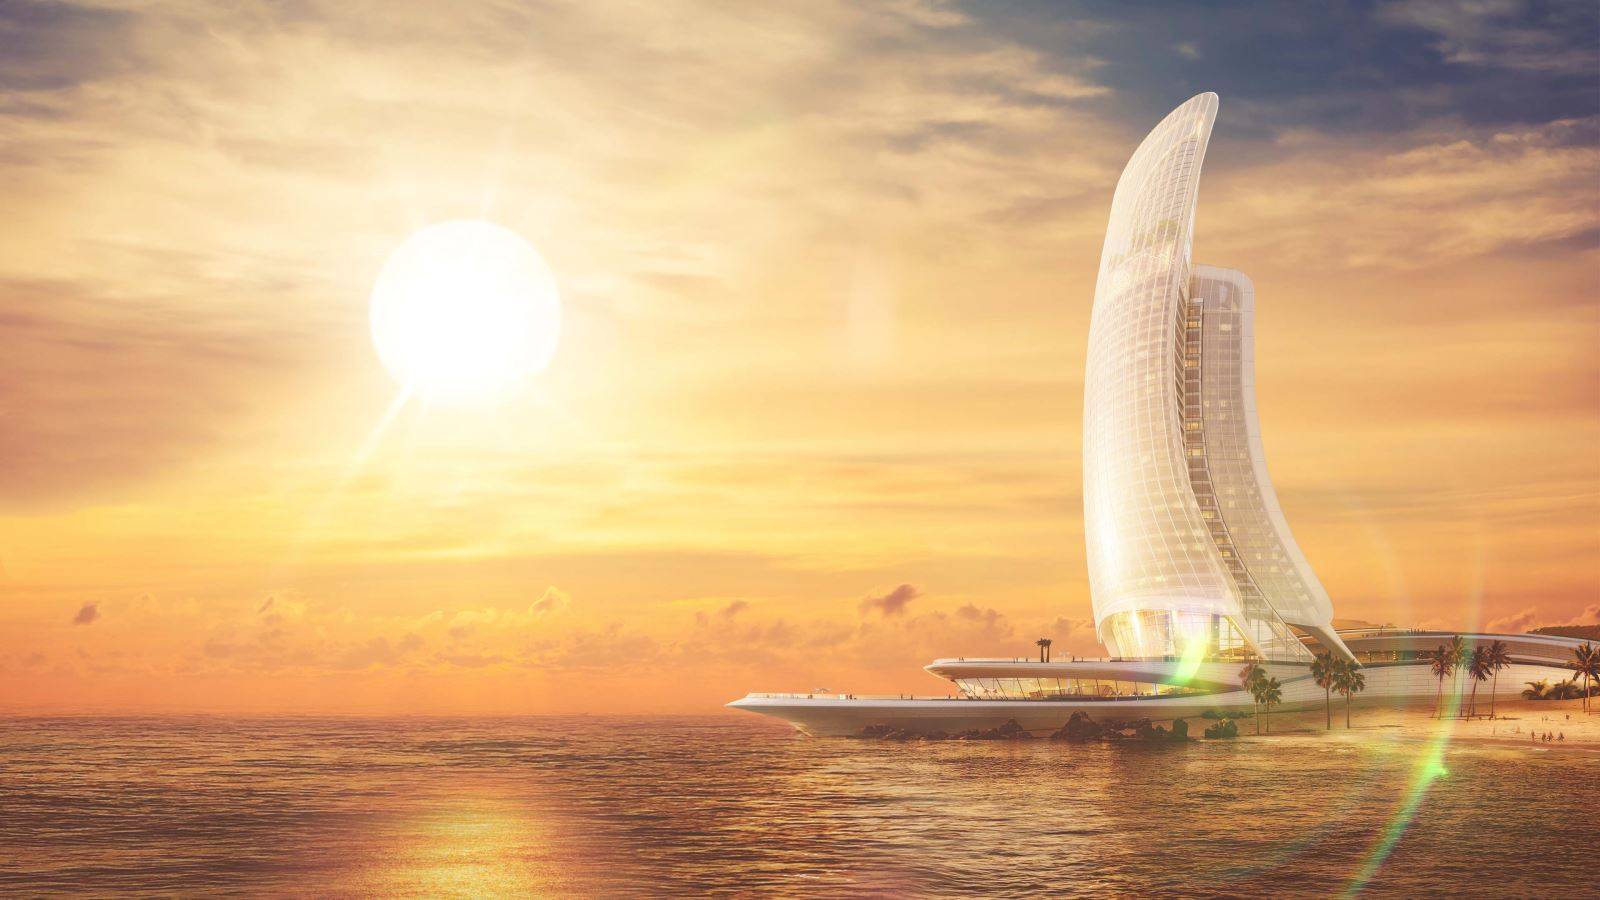 Ra mắt Sun Iconic Hub thuộc Siêu Tổ hợp Hon Thom Paradise Island